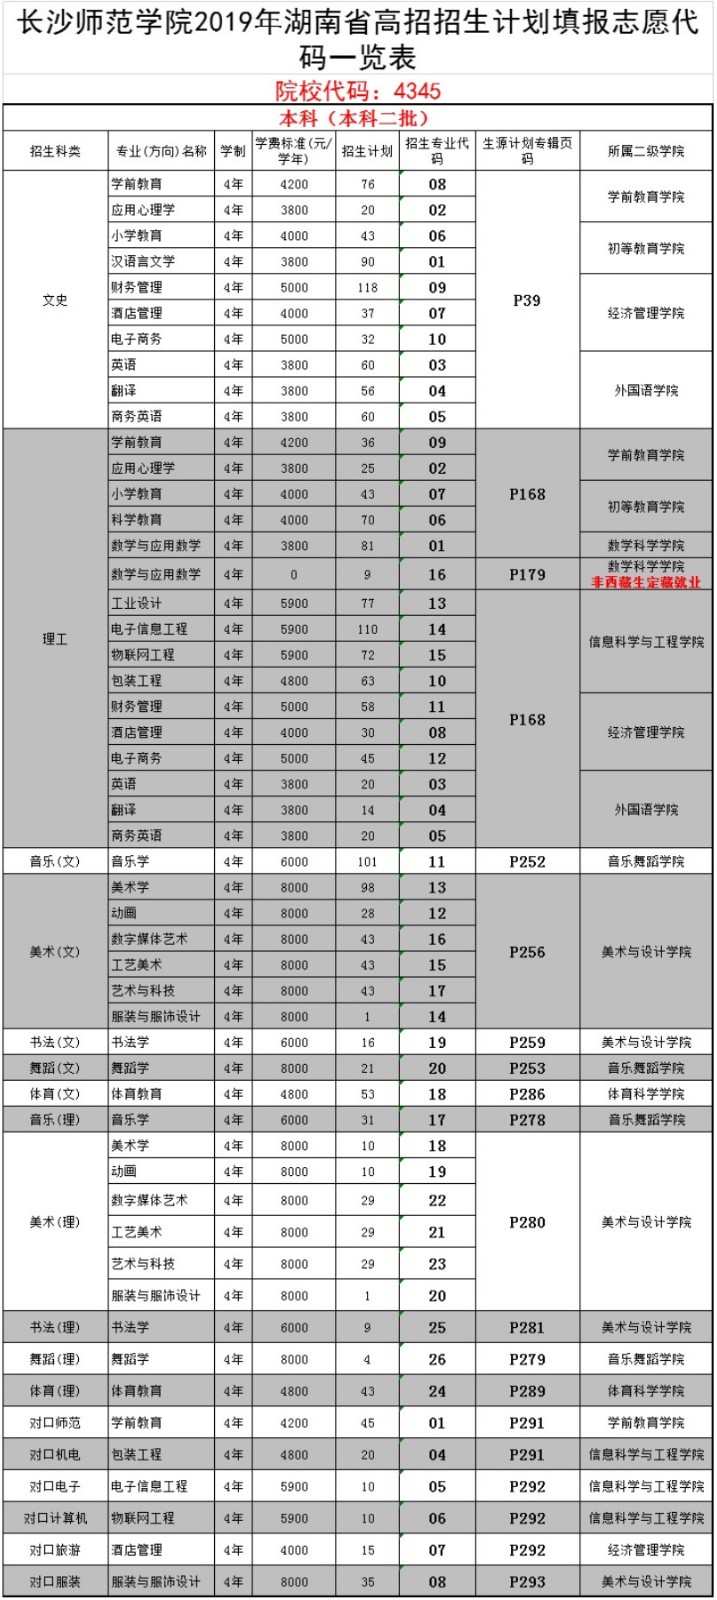 2019年长沙师范学院湖南省高招招生计划填报志愿代码一览表